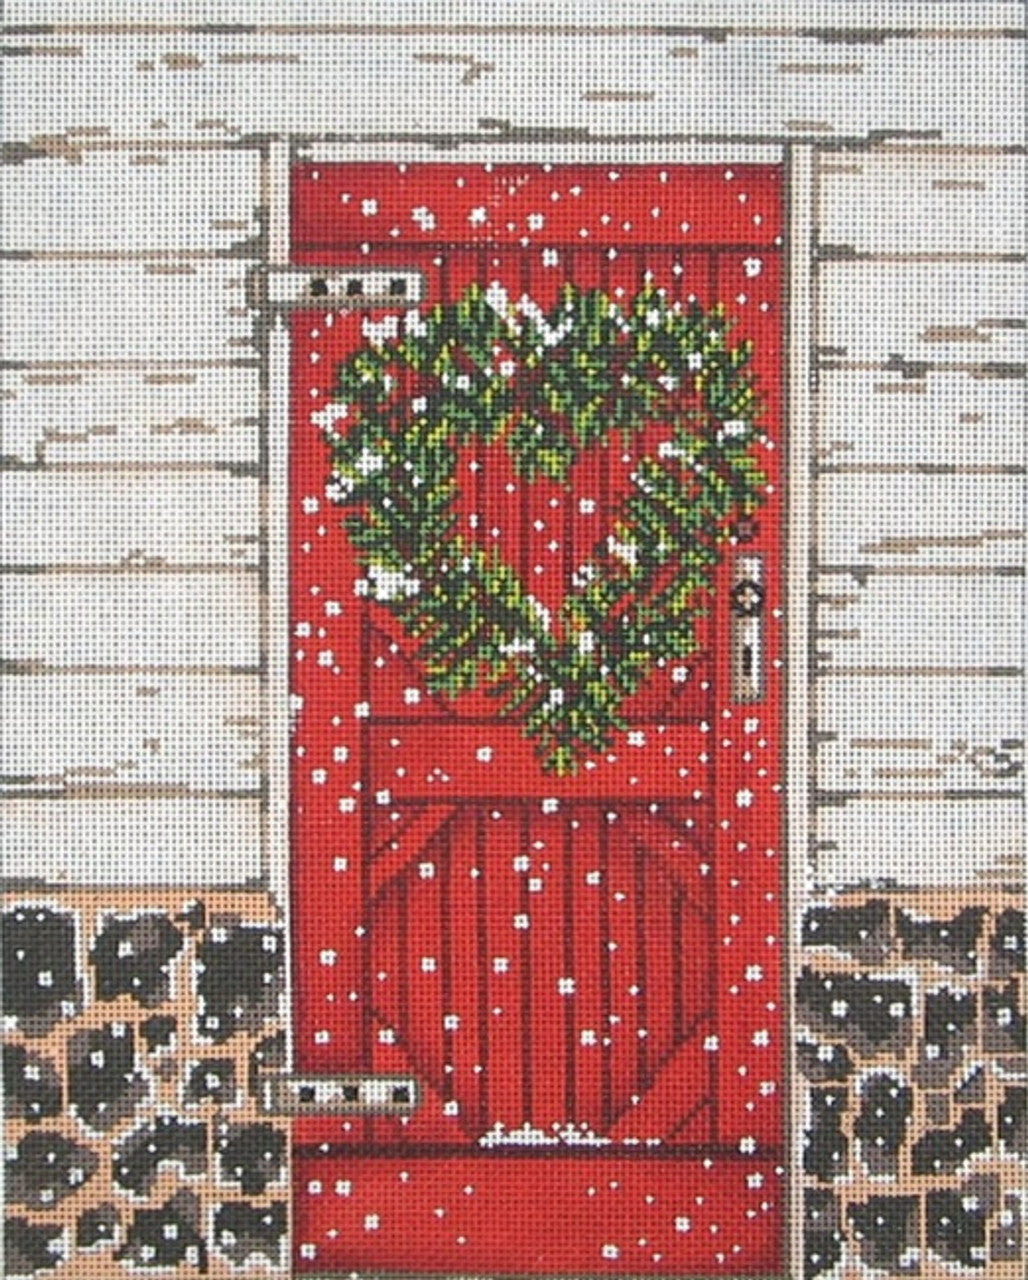 1081 - Snowy Red Door